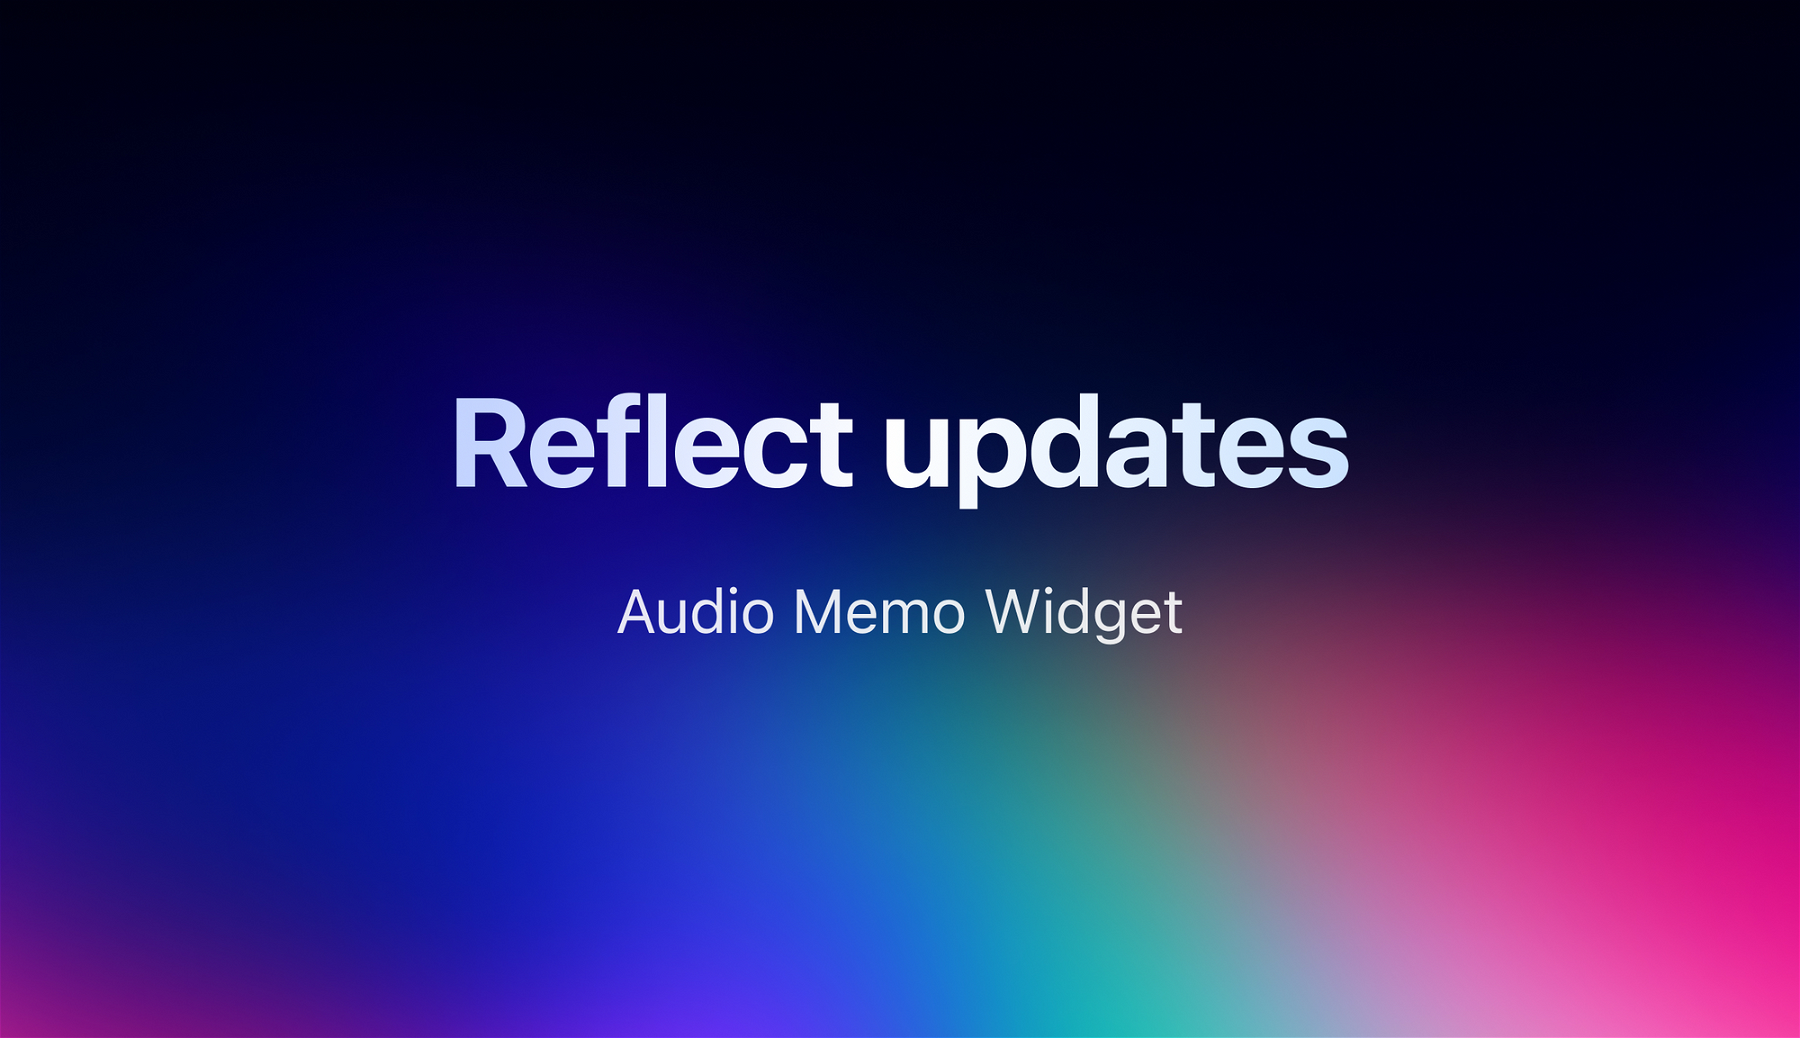 Reflect updates: New audio memo widget